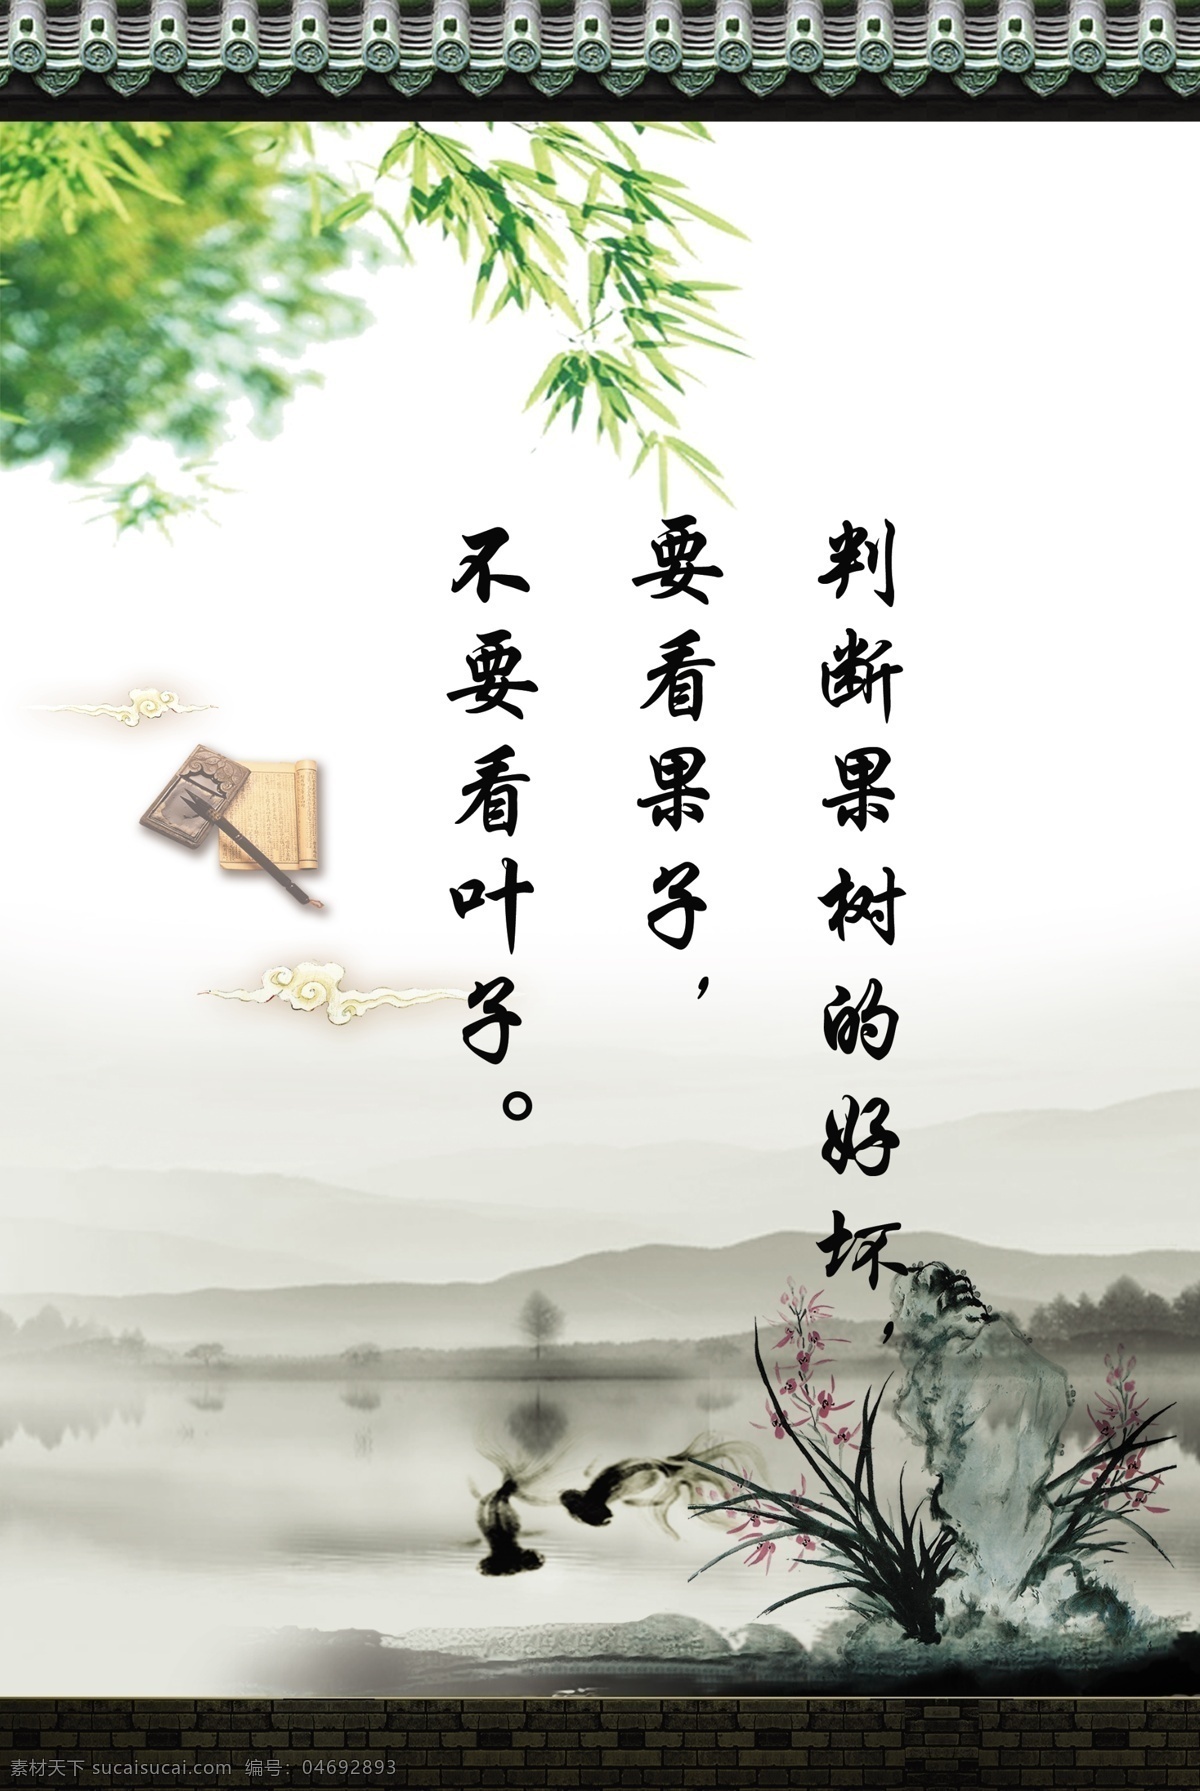 校园展板 文化展板 名人名言 文化 水墨画 水墨 传统 中国风 文化墙 励志 文化宣传 展板 文化标语 展板模板 广告设计模板 源文件